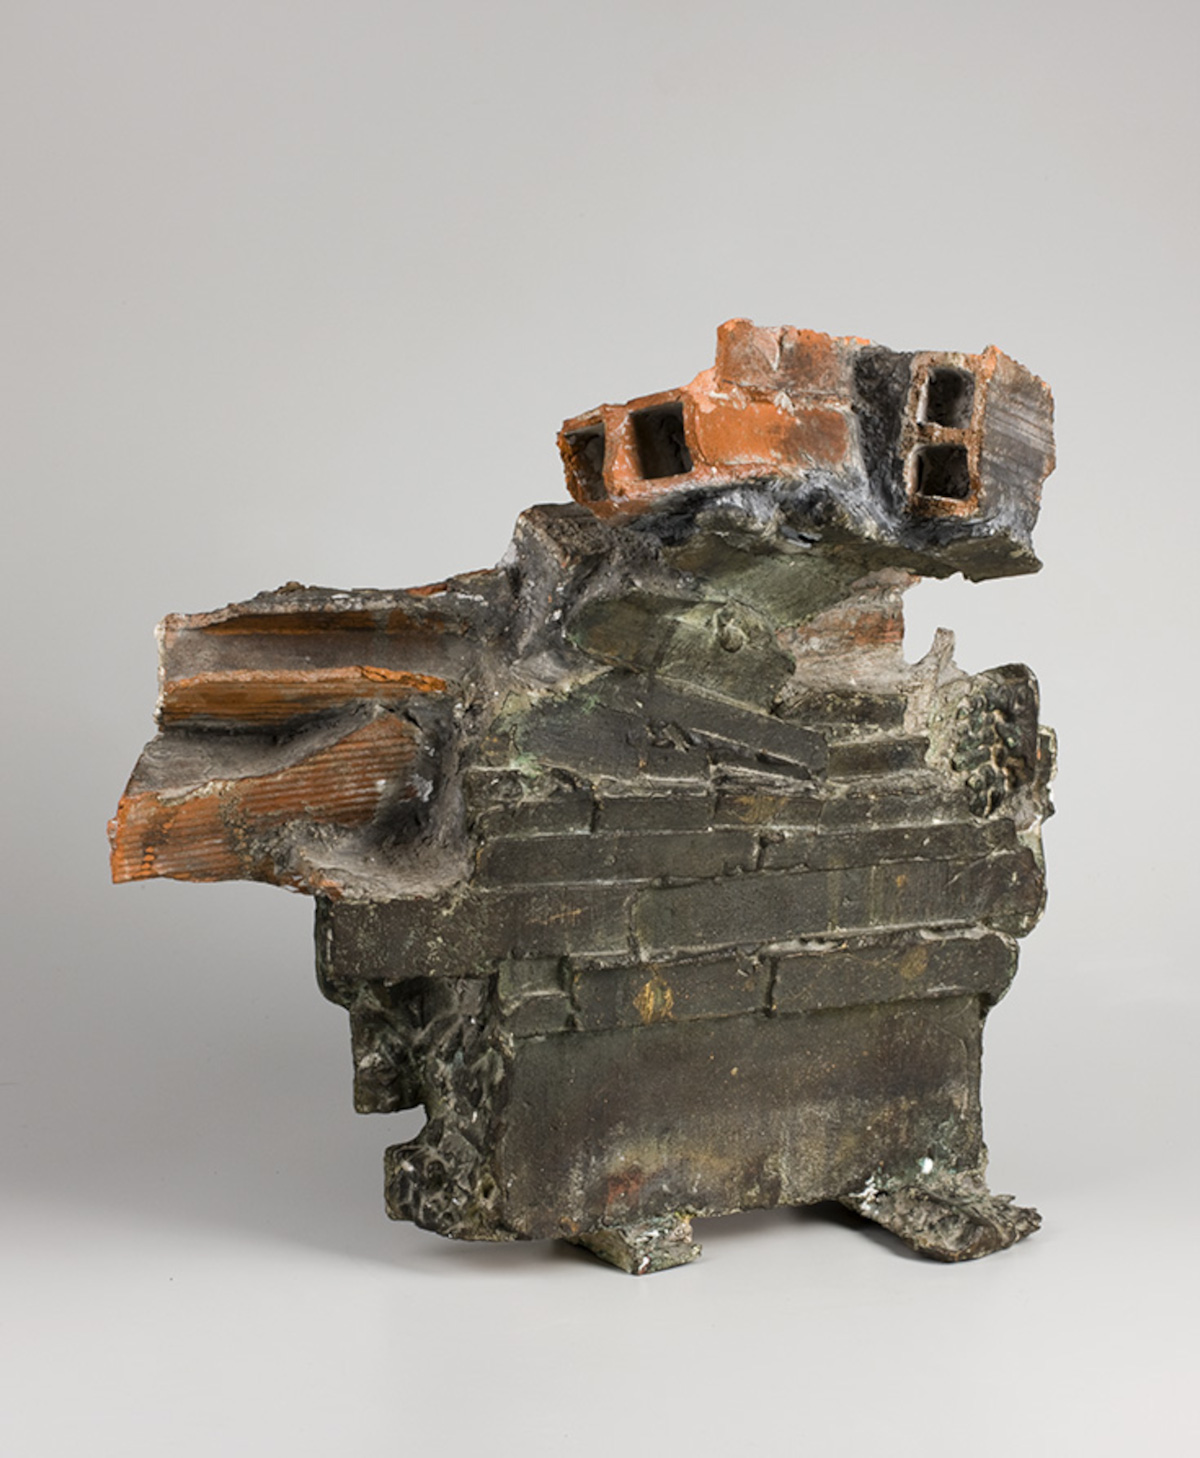 Pablo Serrano, Bóveda para el Hombre n°63 (1962; brick, cement and bronze, 47 x 55 x 27.5 cm; Zaragoza, Museo Pablo Serrano). Credit IAACC